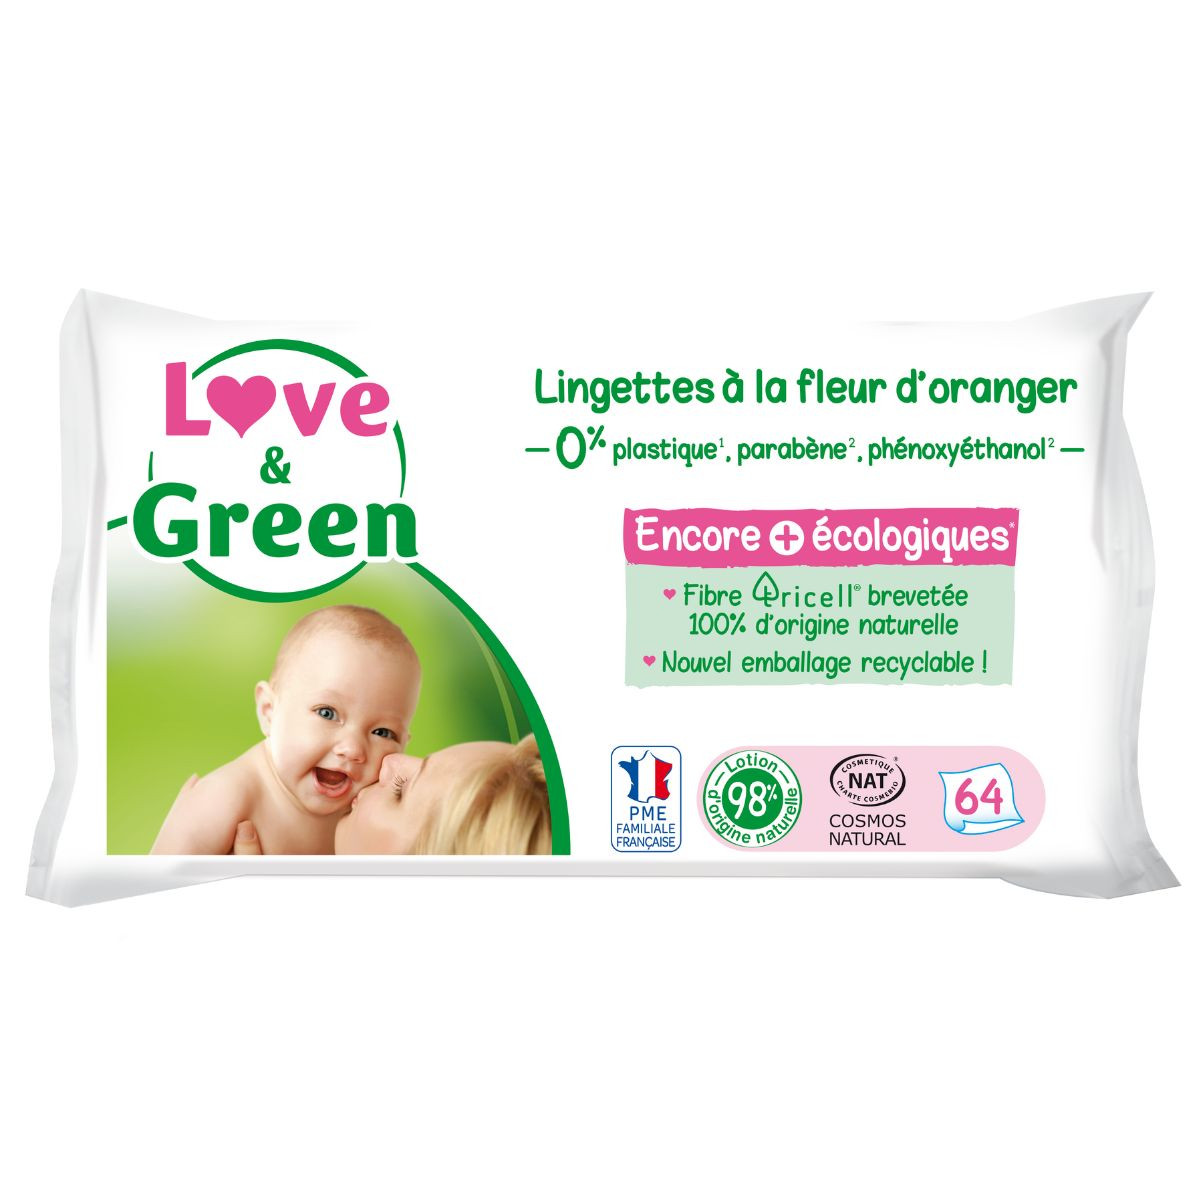 Love & Green Lingettes toilettes hypoallergéniques x55 - INCI Beauty